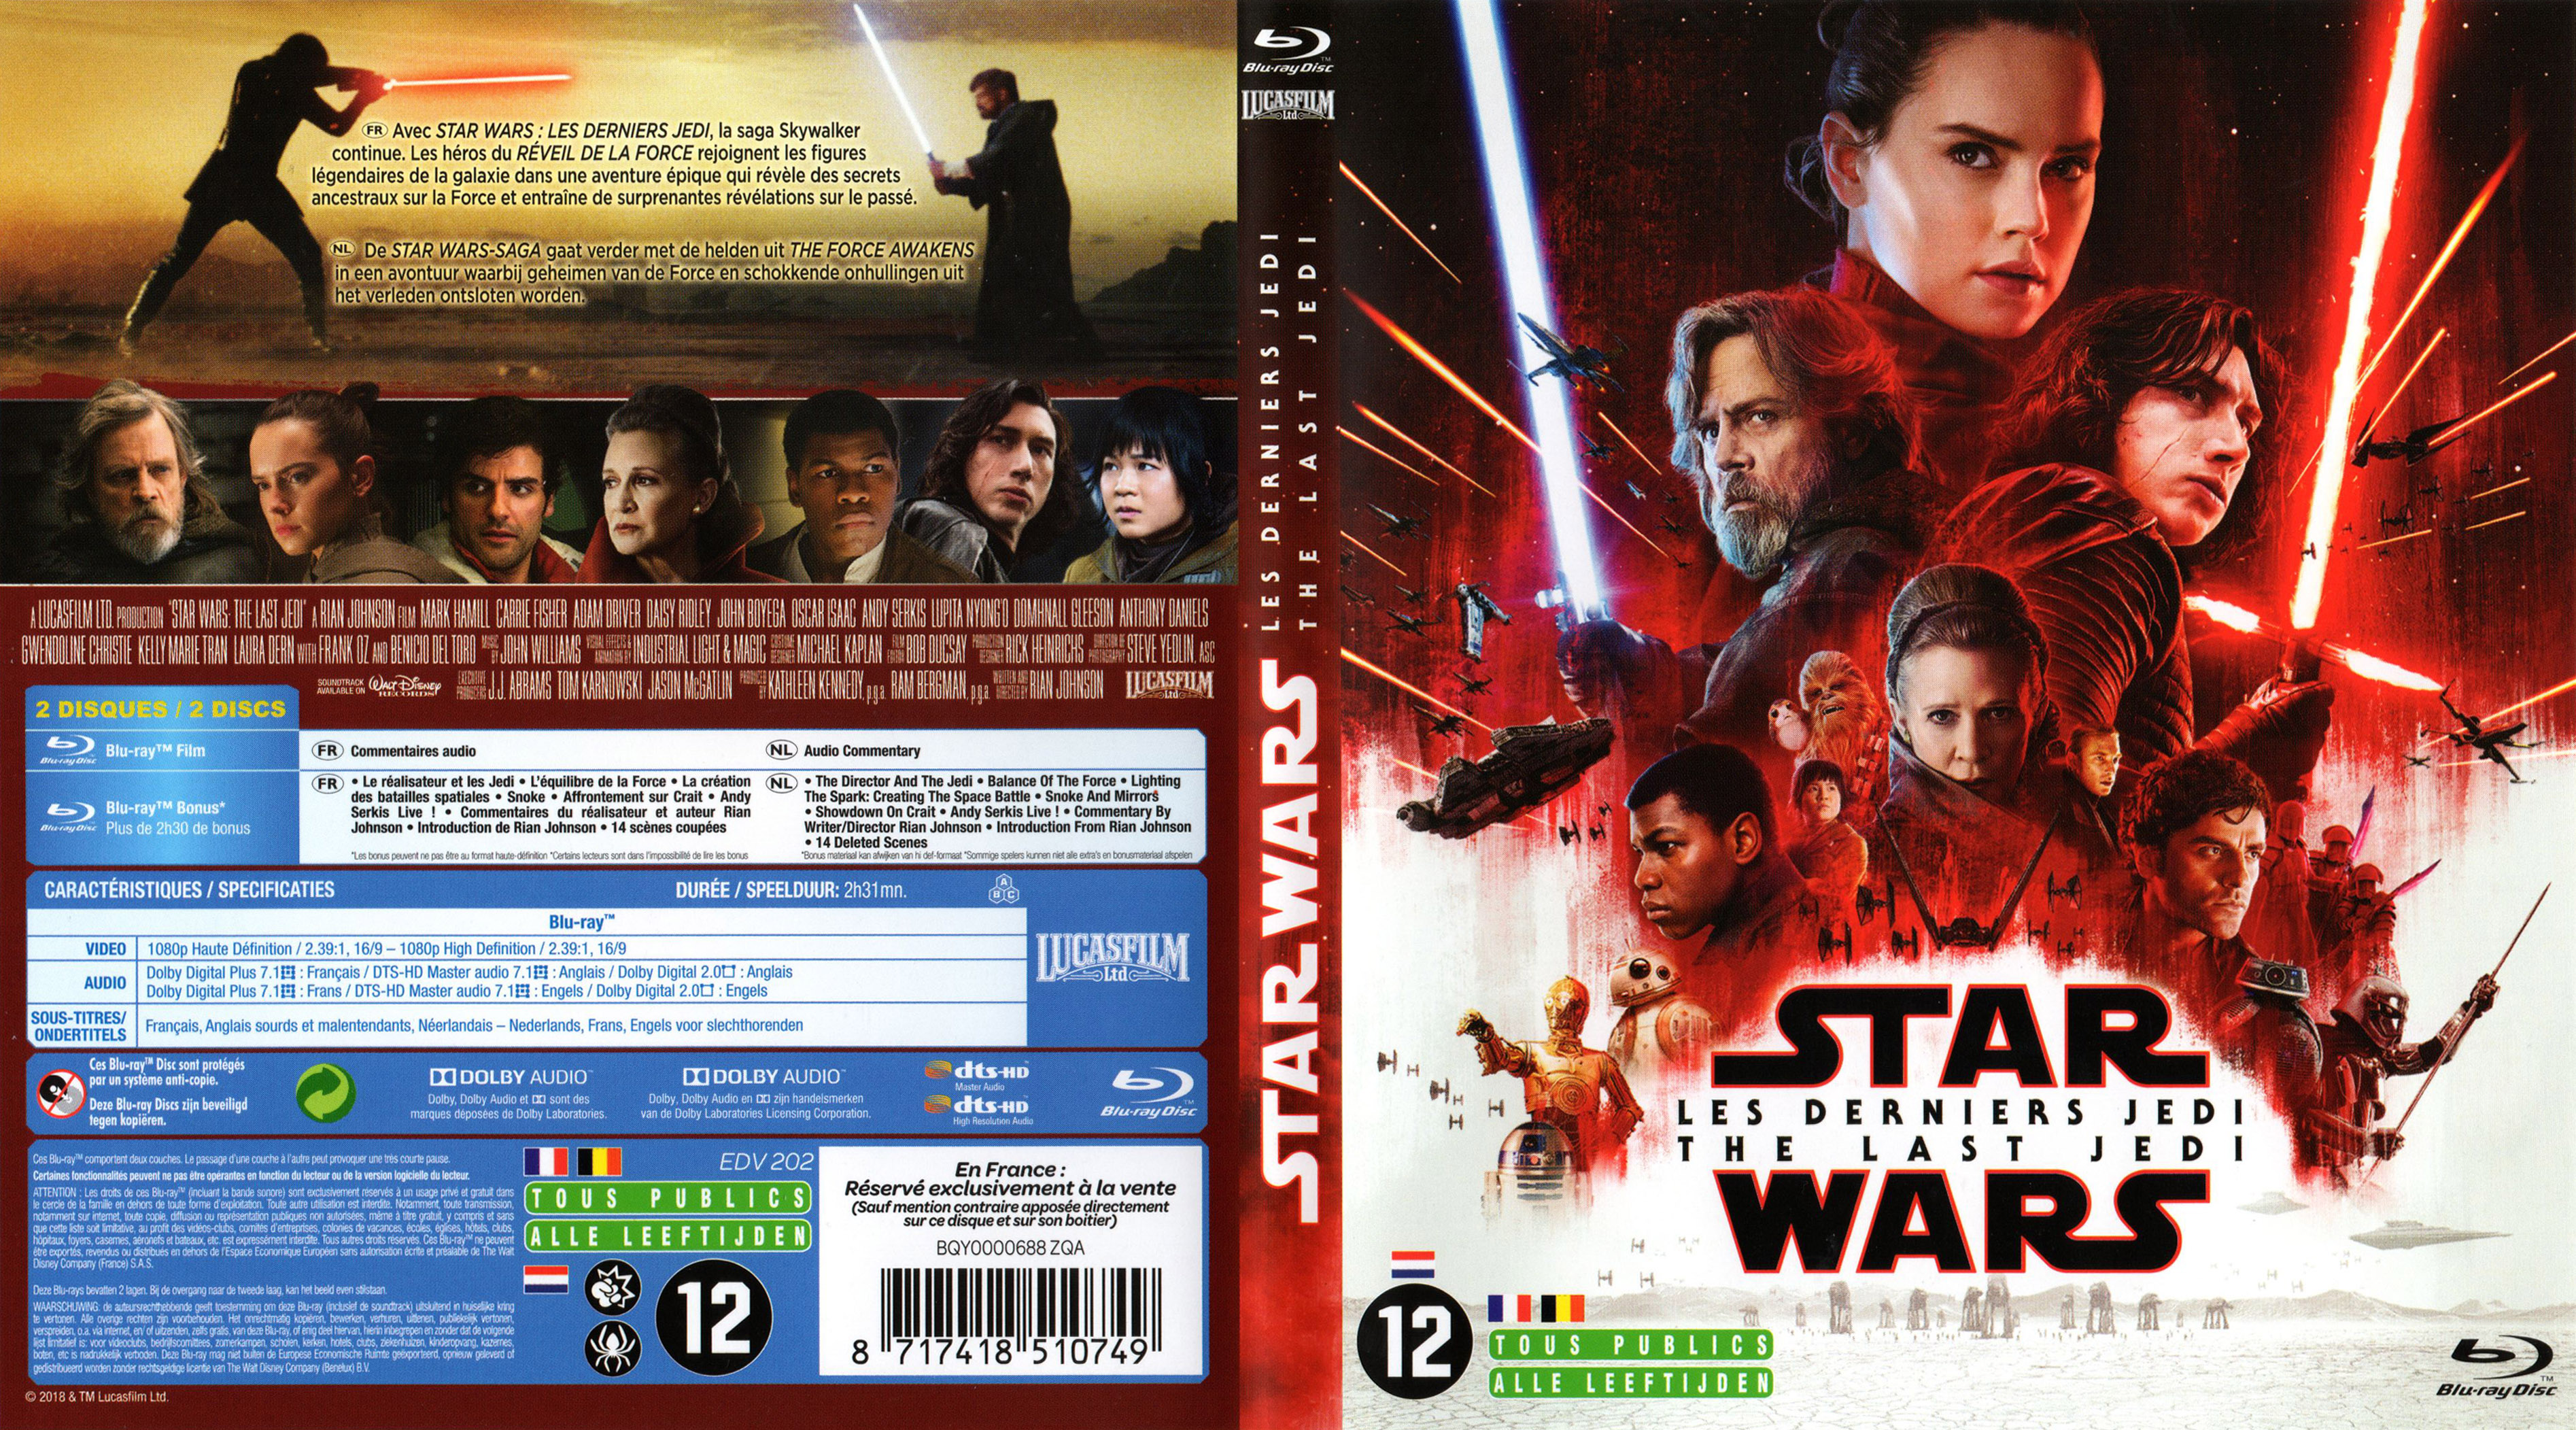 Jaquette DVD Star Wars Les derniers jedi (BLU-RAY)